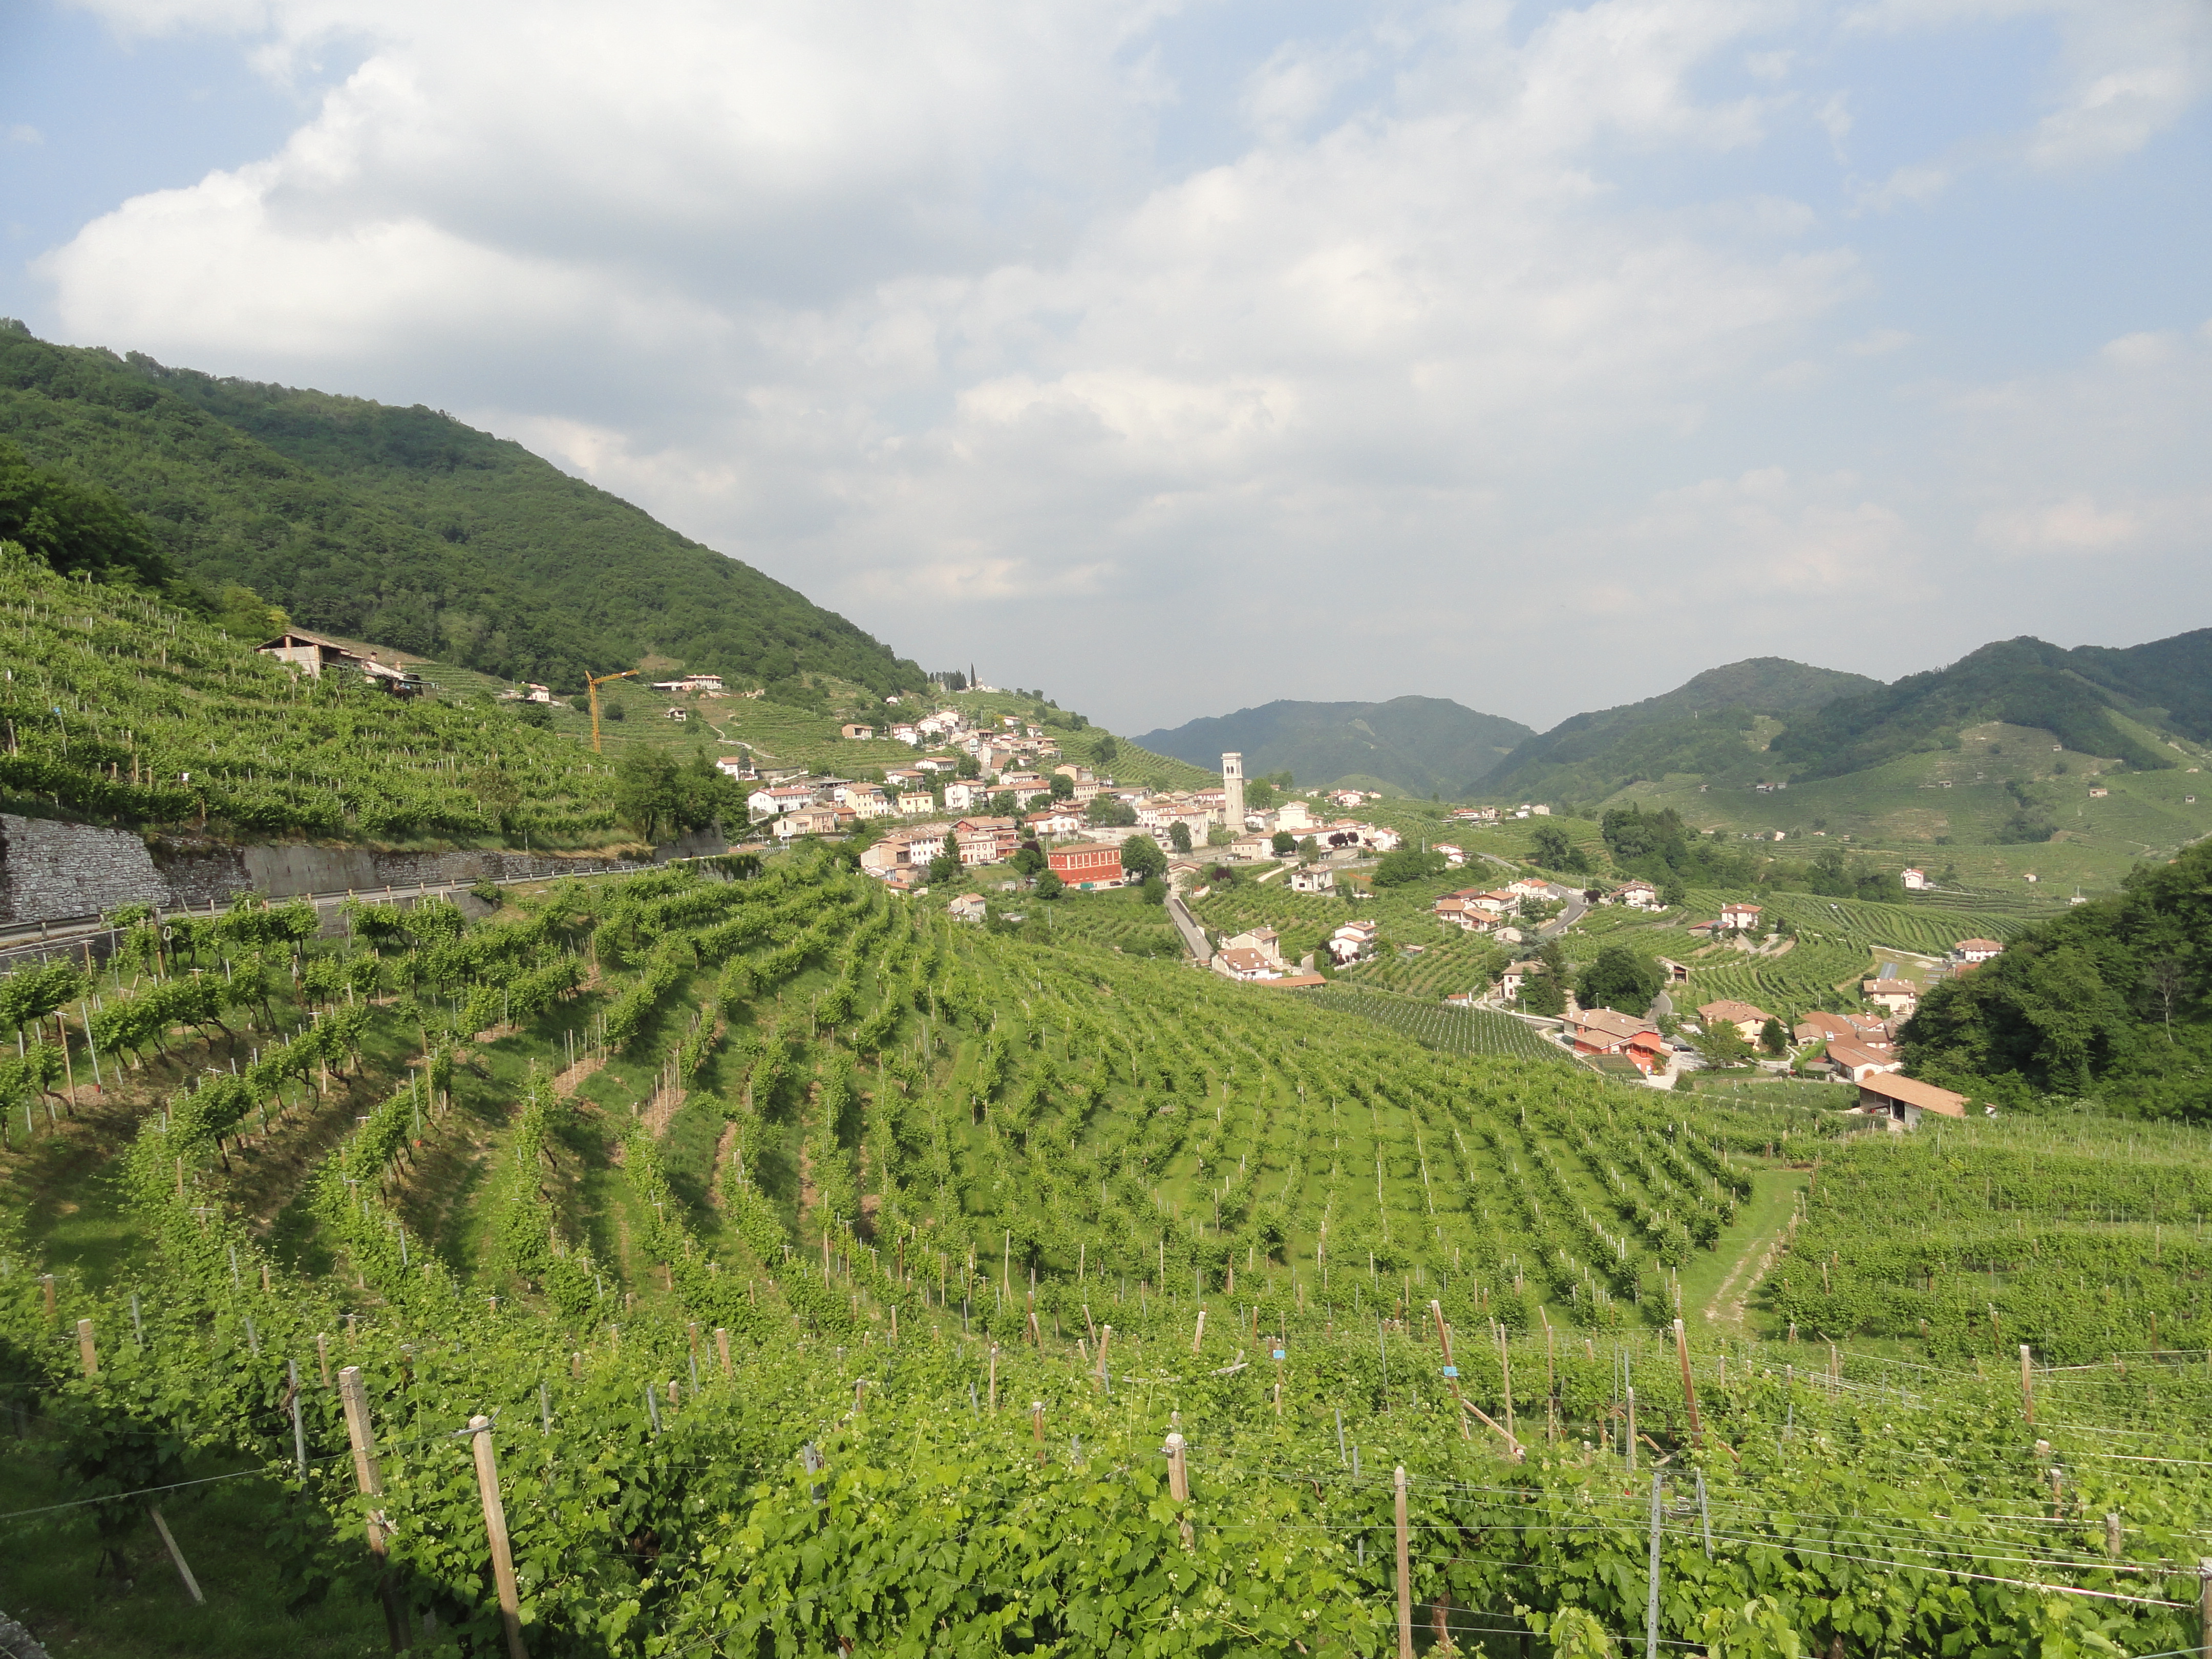 Dolomites vineyards